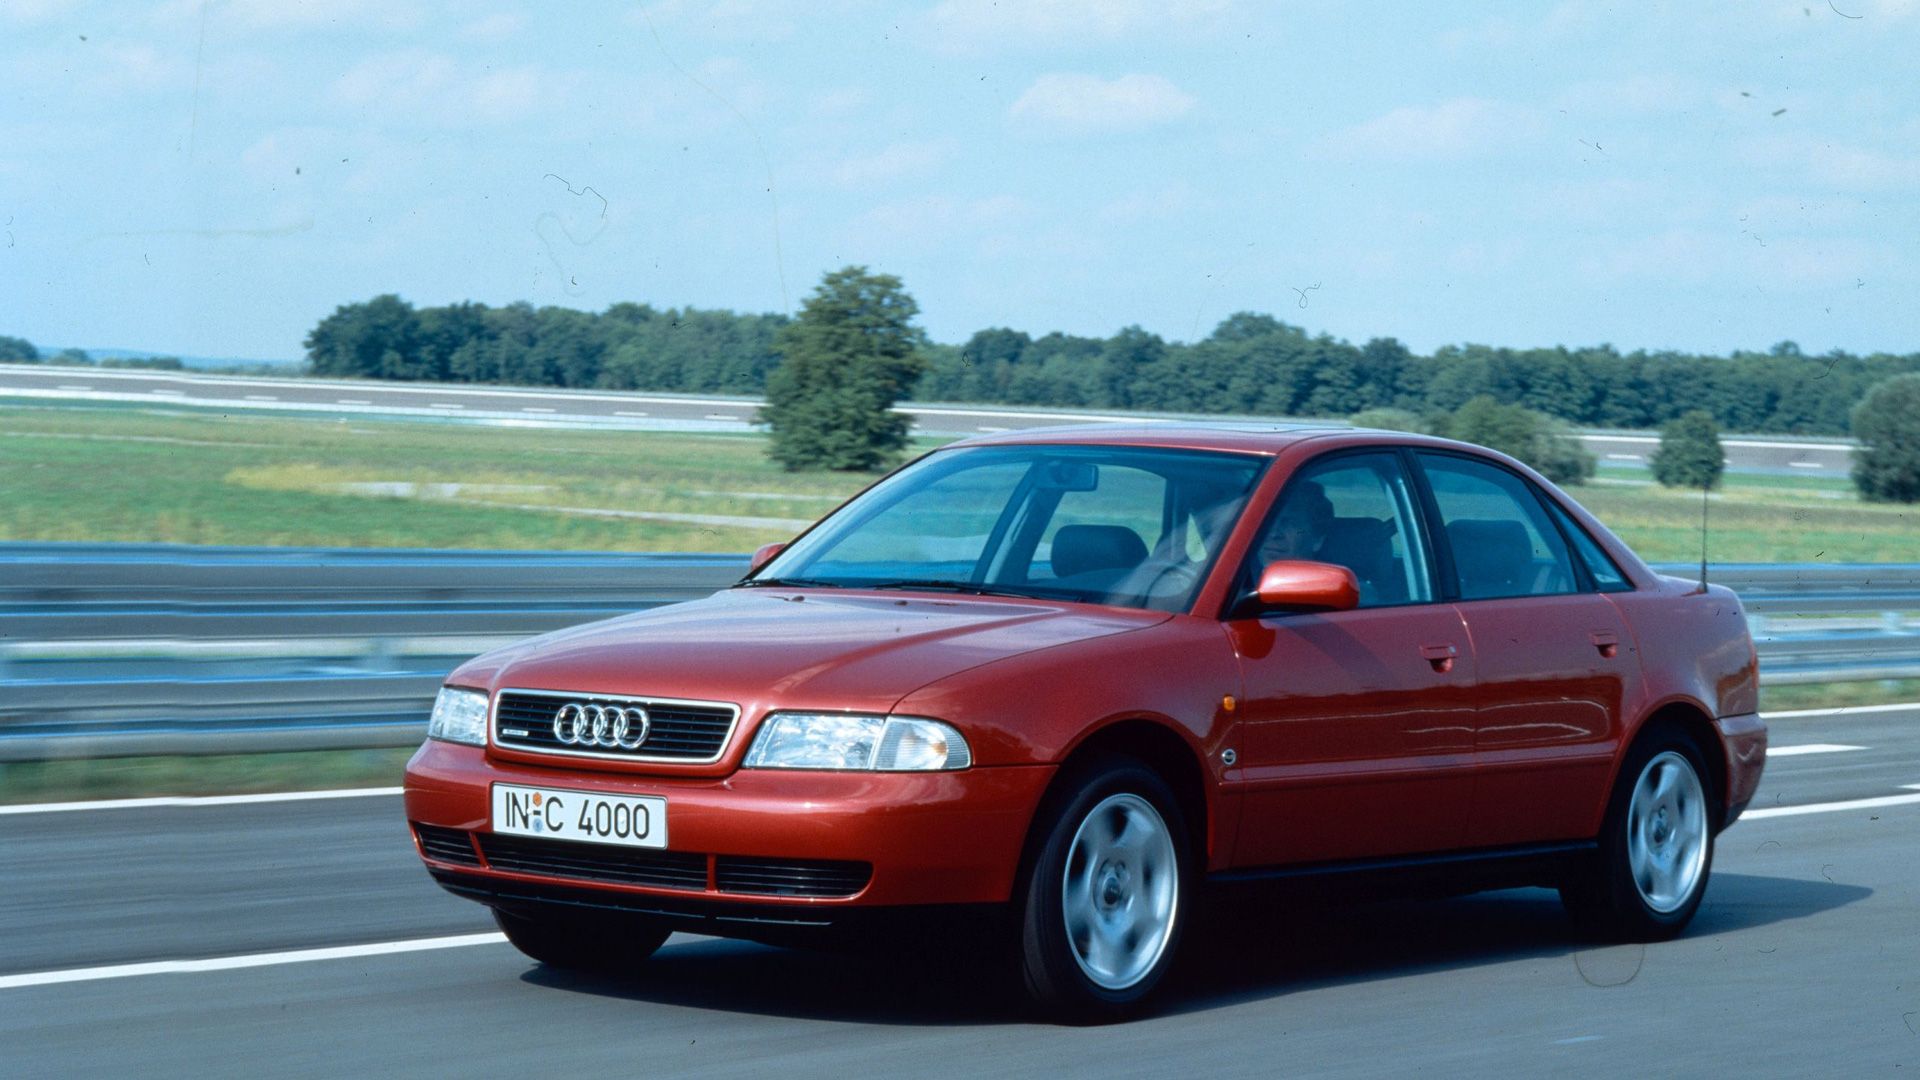 Audi A4 (rot, V6 2.8 quattro) - Fahraufnahme